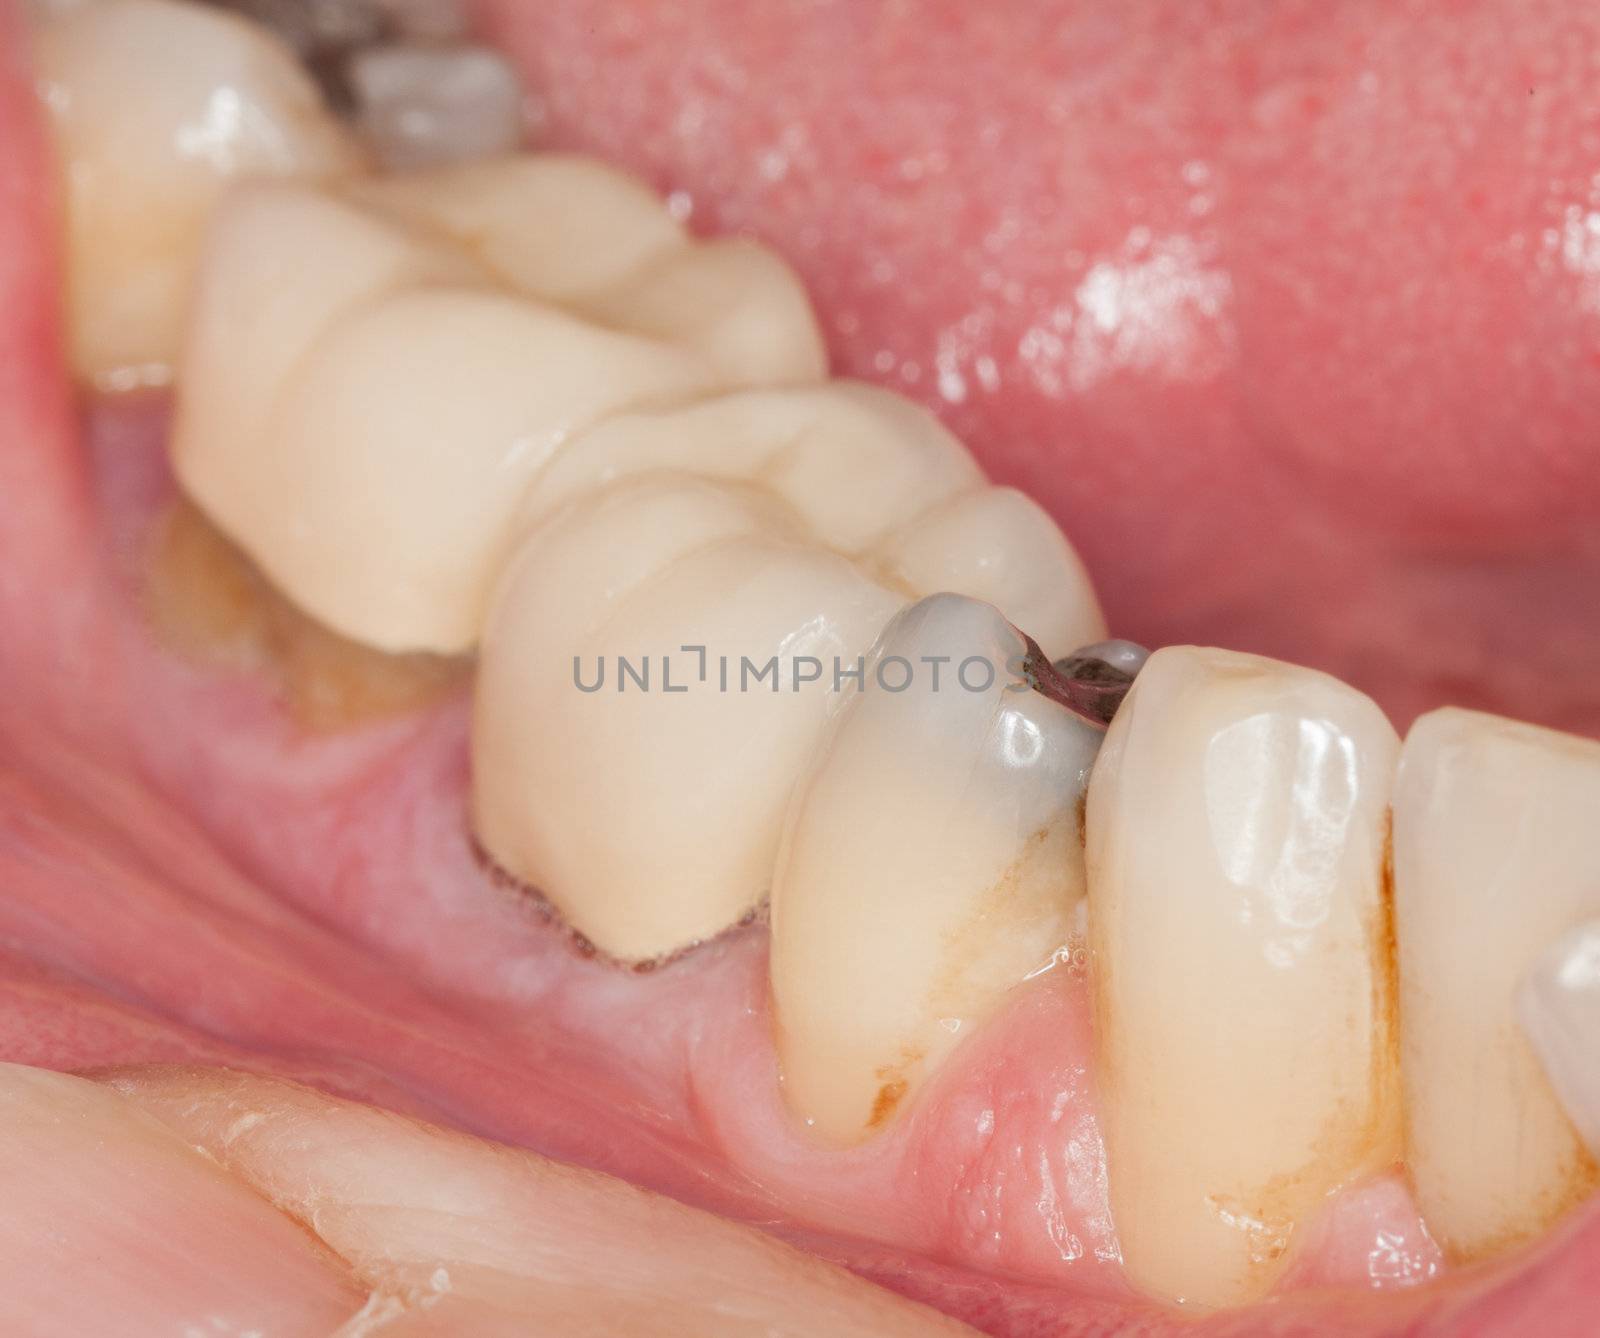 Macro image of filled teeth by steheap